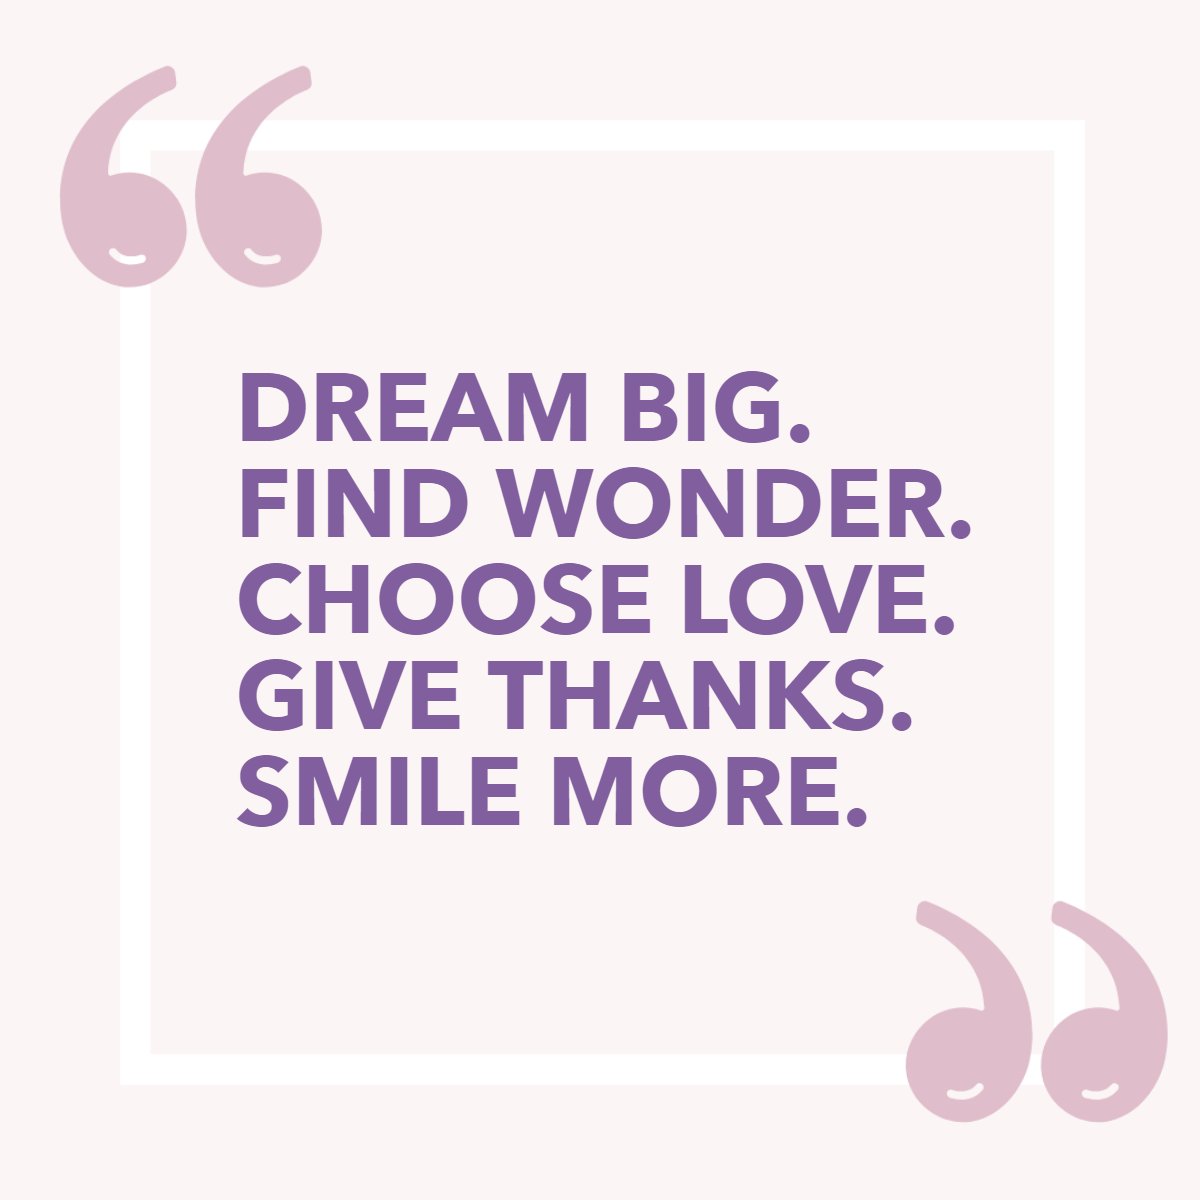 Dream Big.
Find Wonder. 
Choose Love. 
Give Thanks. 
Smile More.🤗

#dreambig #givethanks #smilemore #bigdreams #ichooselove #findwonder #smilemore